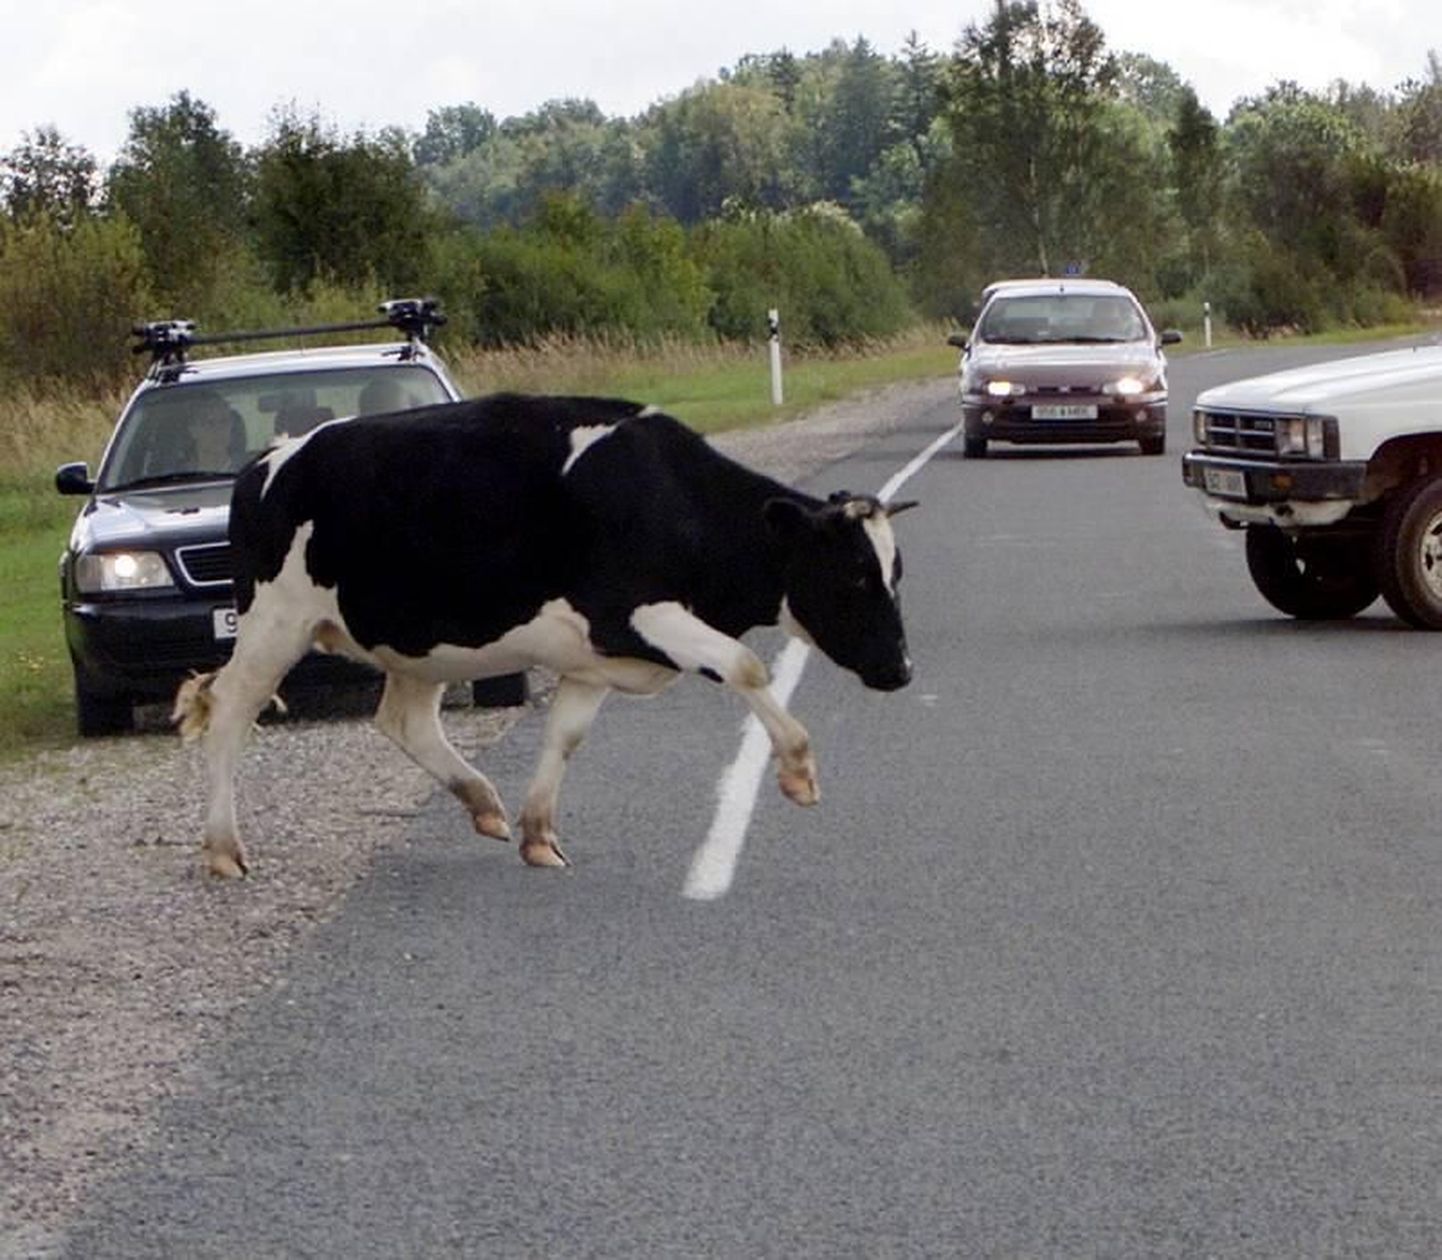 Politsei soovitus on, et kui näete lehmi sõiduteel, tuleks politseile sellest teada anda.